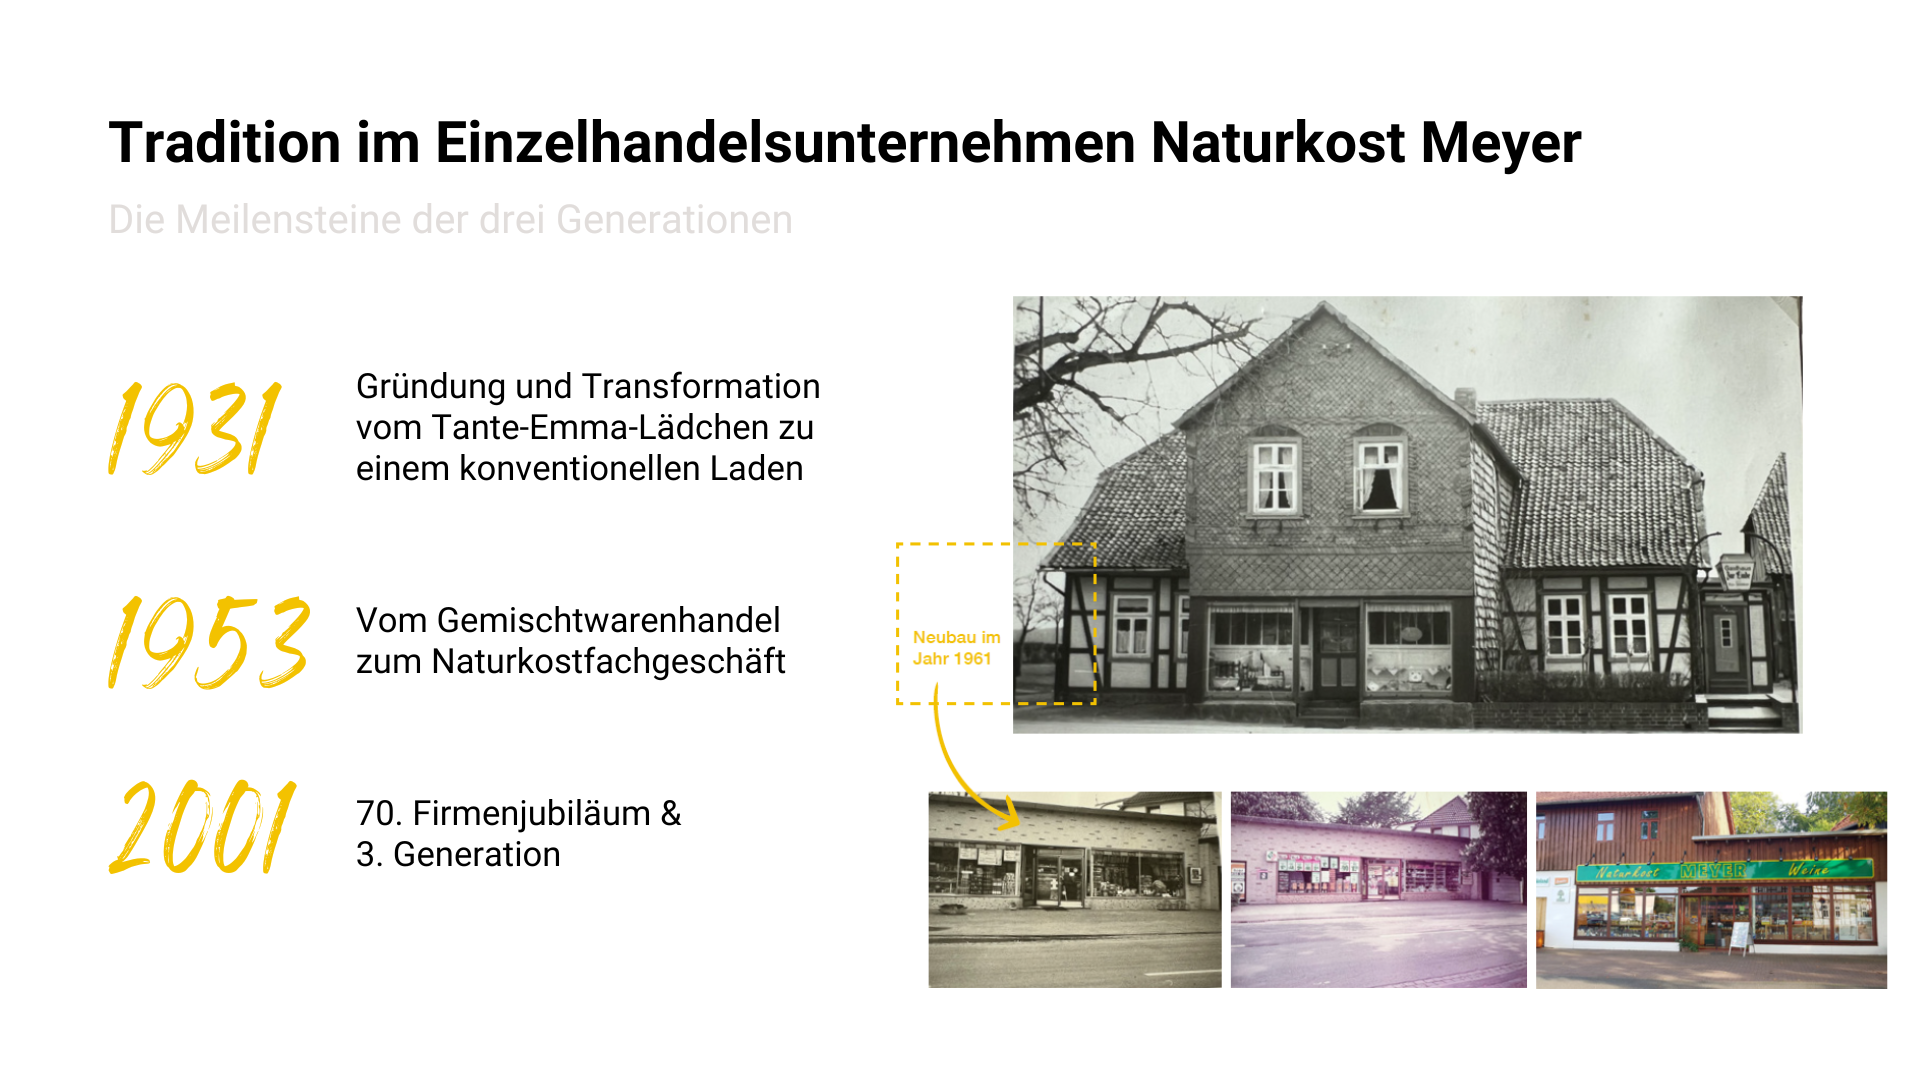 Infosheet "Tradition im Einzelhandelsunternehmen Naturkost Meyer" mit Zeitangaben von 1931-2001